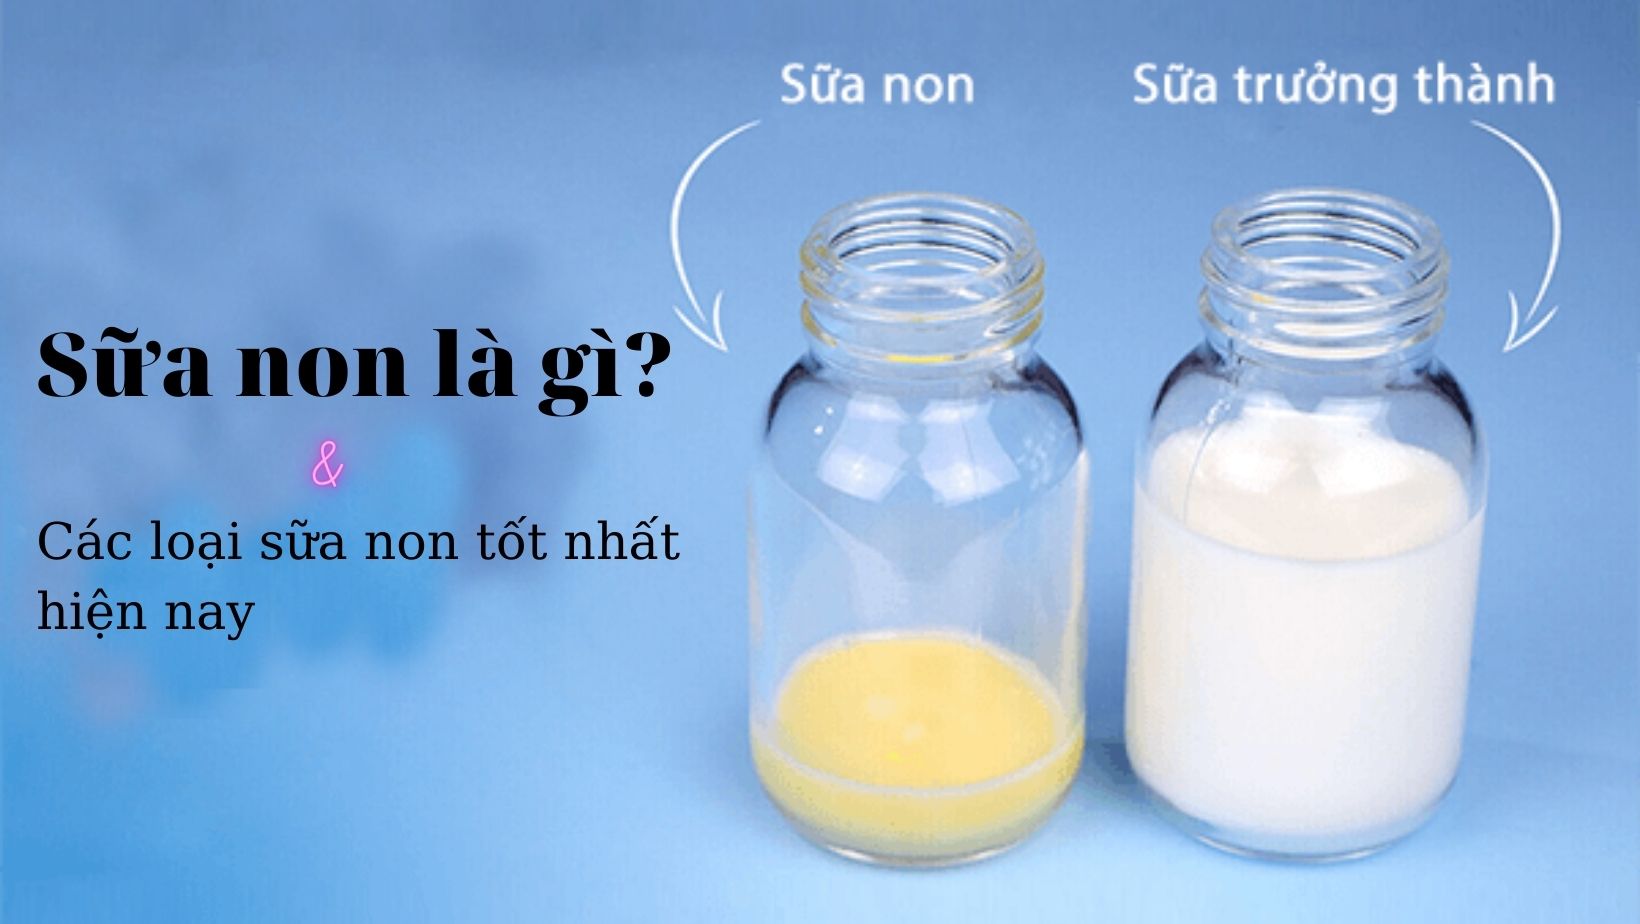 Sữa non là gì? Những điều cần biết - Phần 1 | Pacific Cross Việt Nam